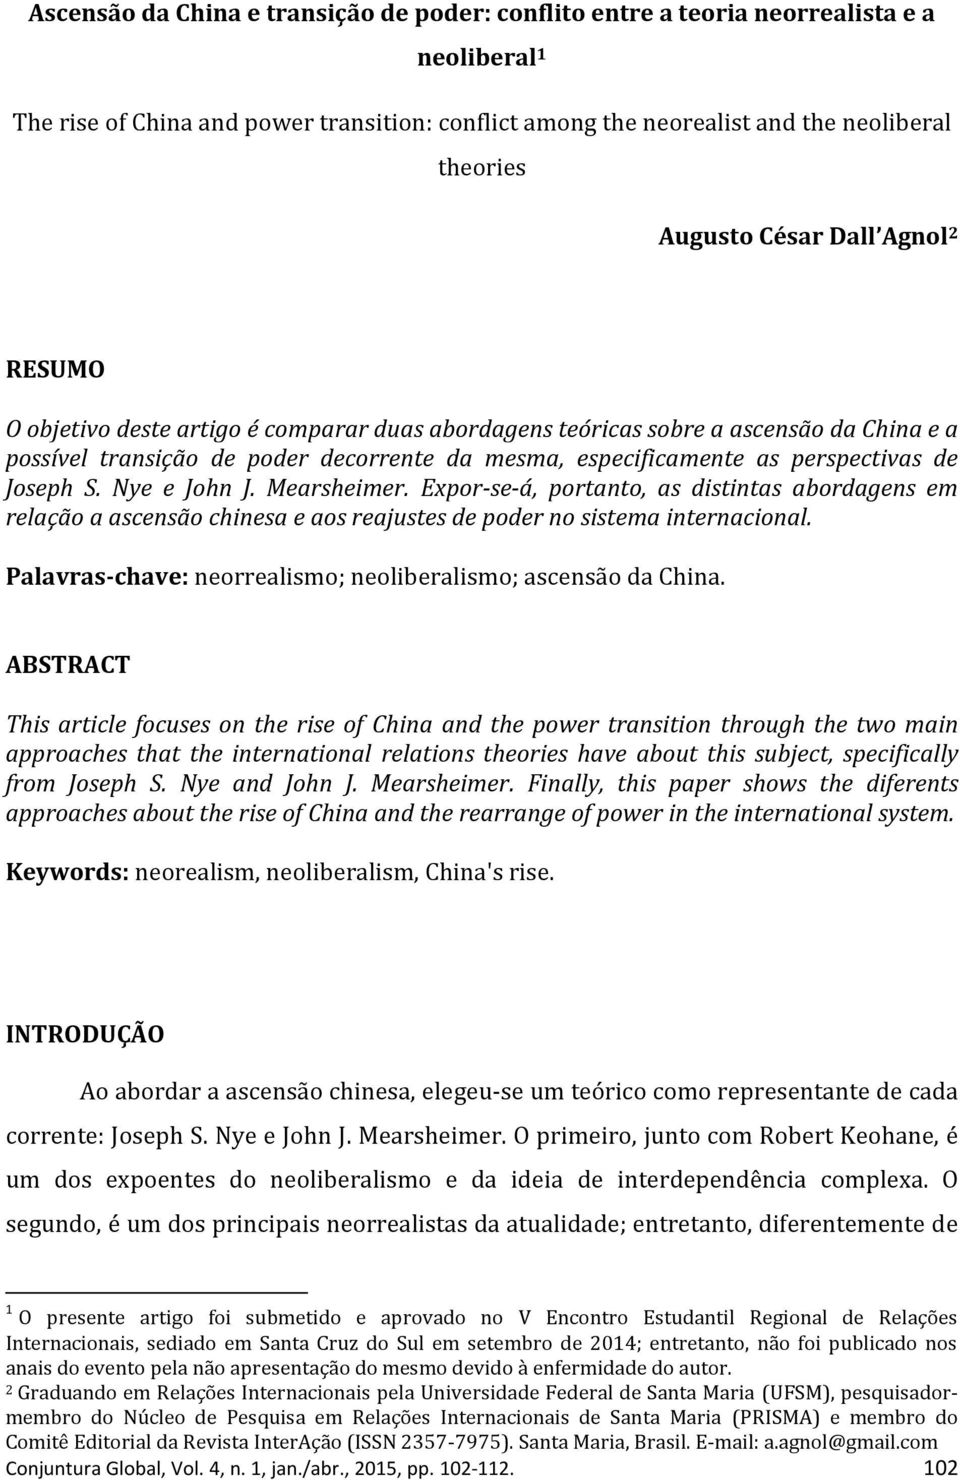 Joseph S. Nye e John J. Mearsheimer. Expor-se-á, portanto, as distintas abordagens em relação a ascensão chinesa e aos reajustes de poder no sistema internacional.